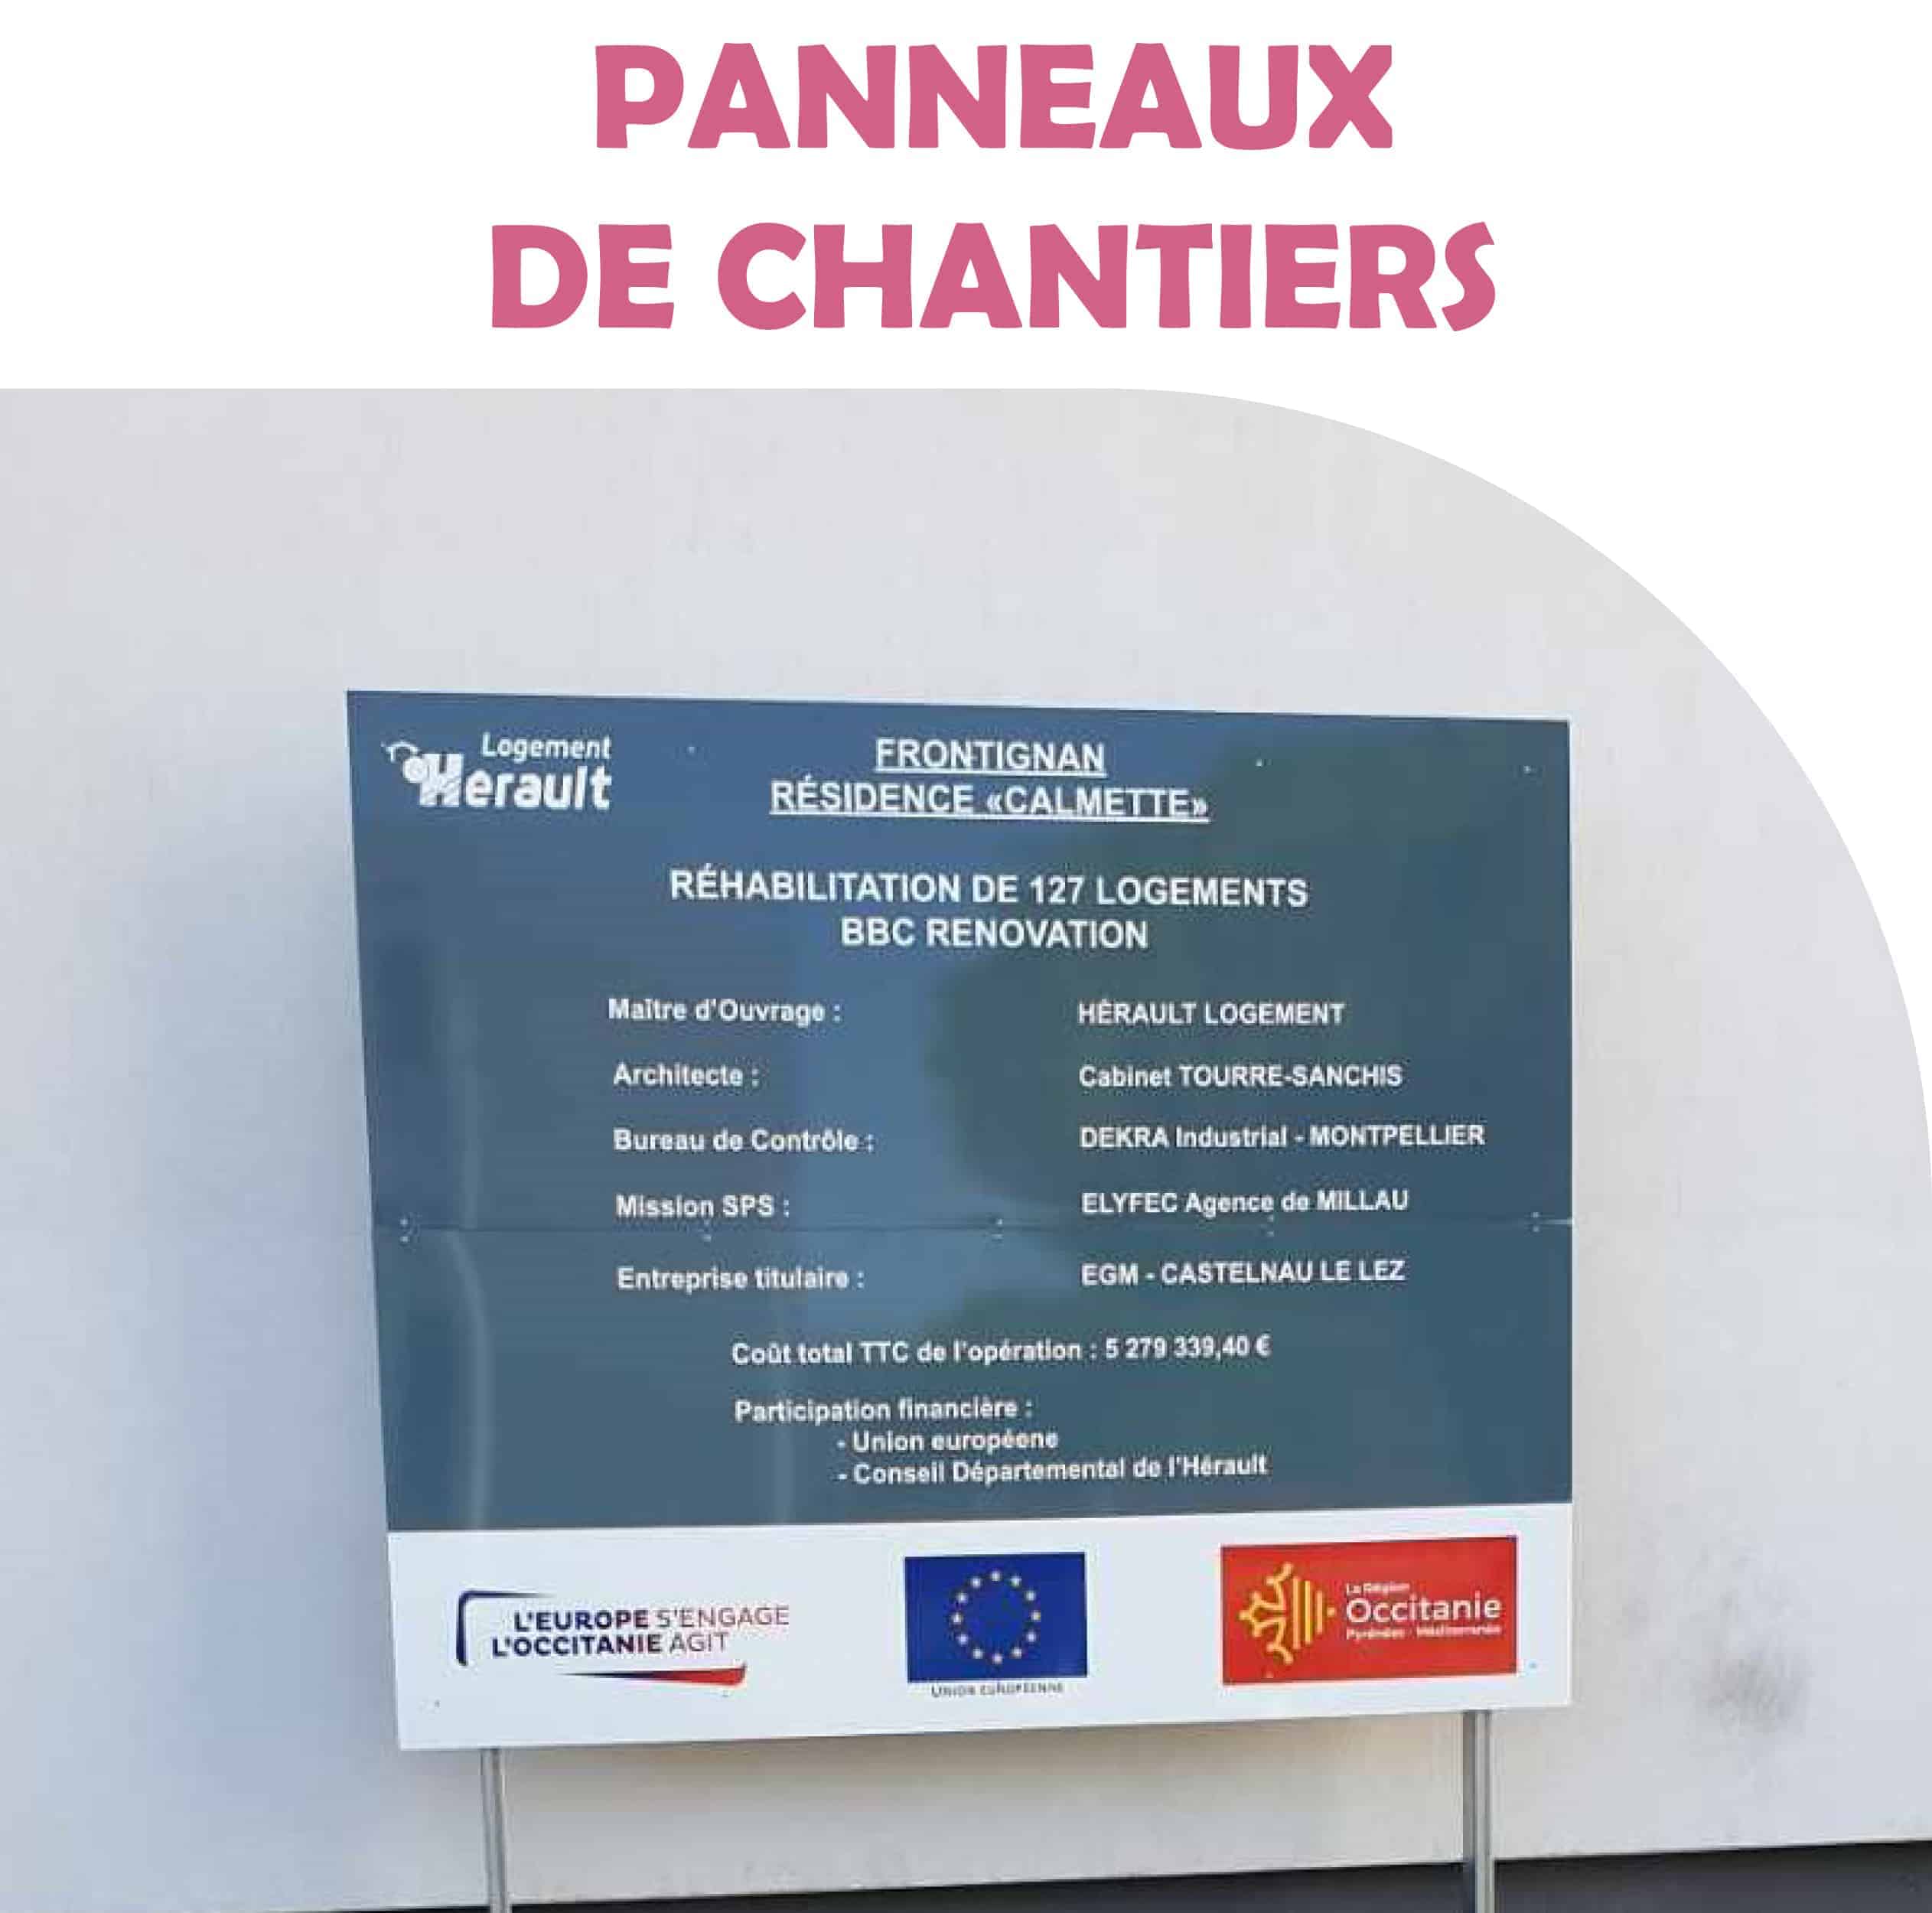 PANNEAUX DE CHANTIERS